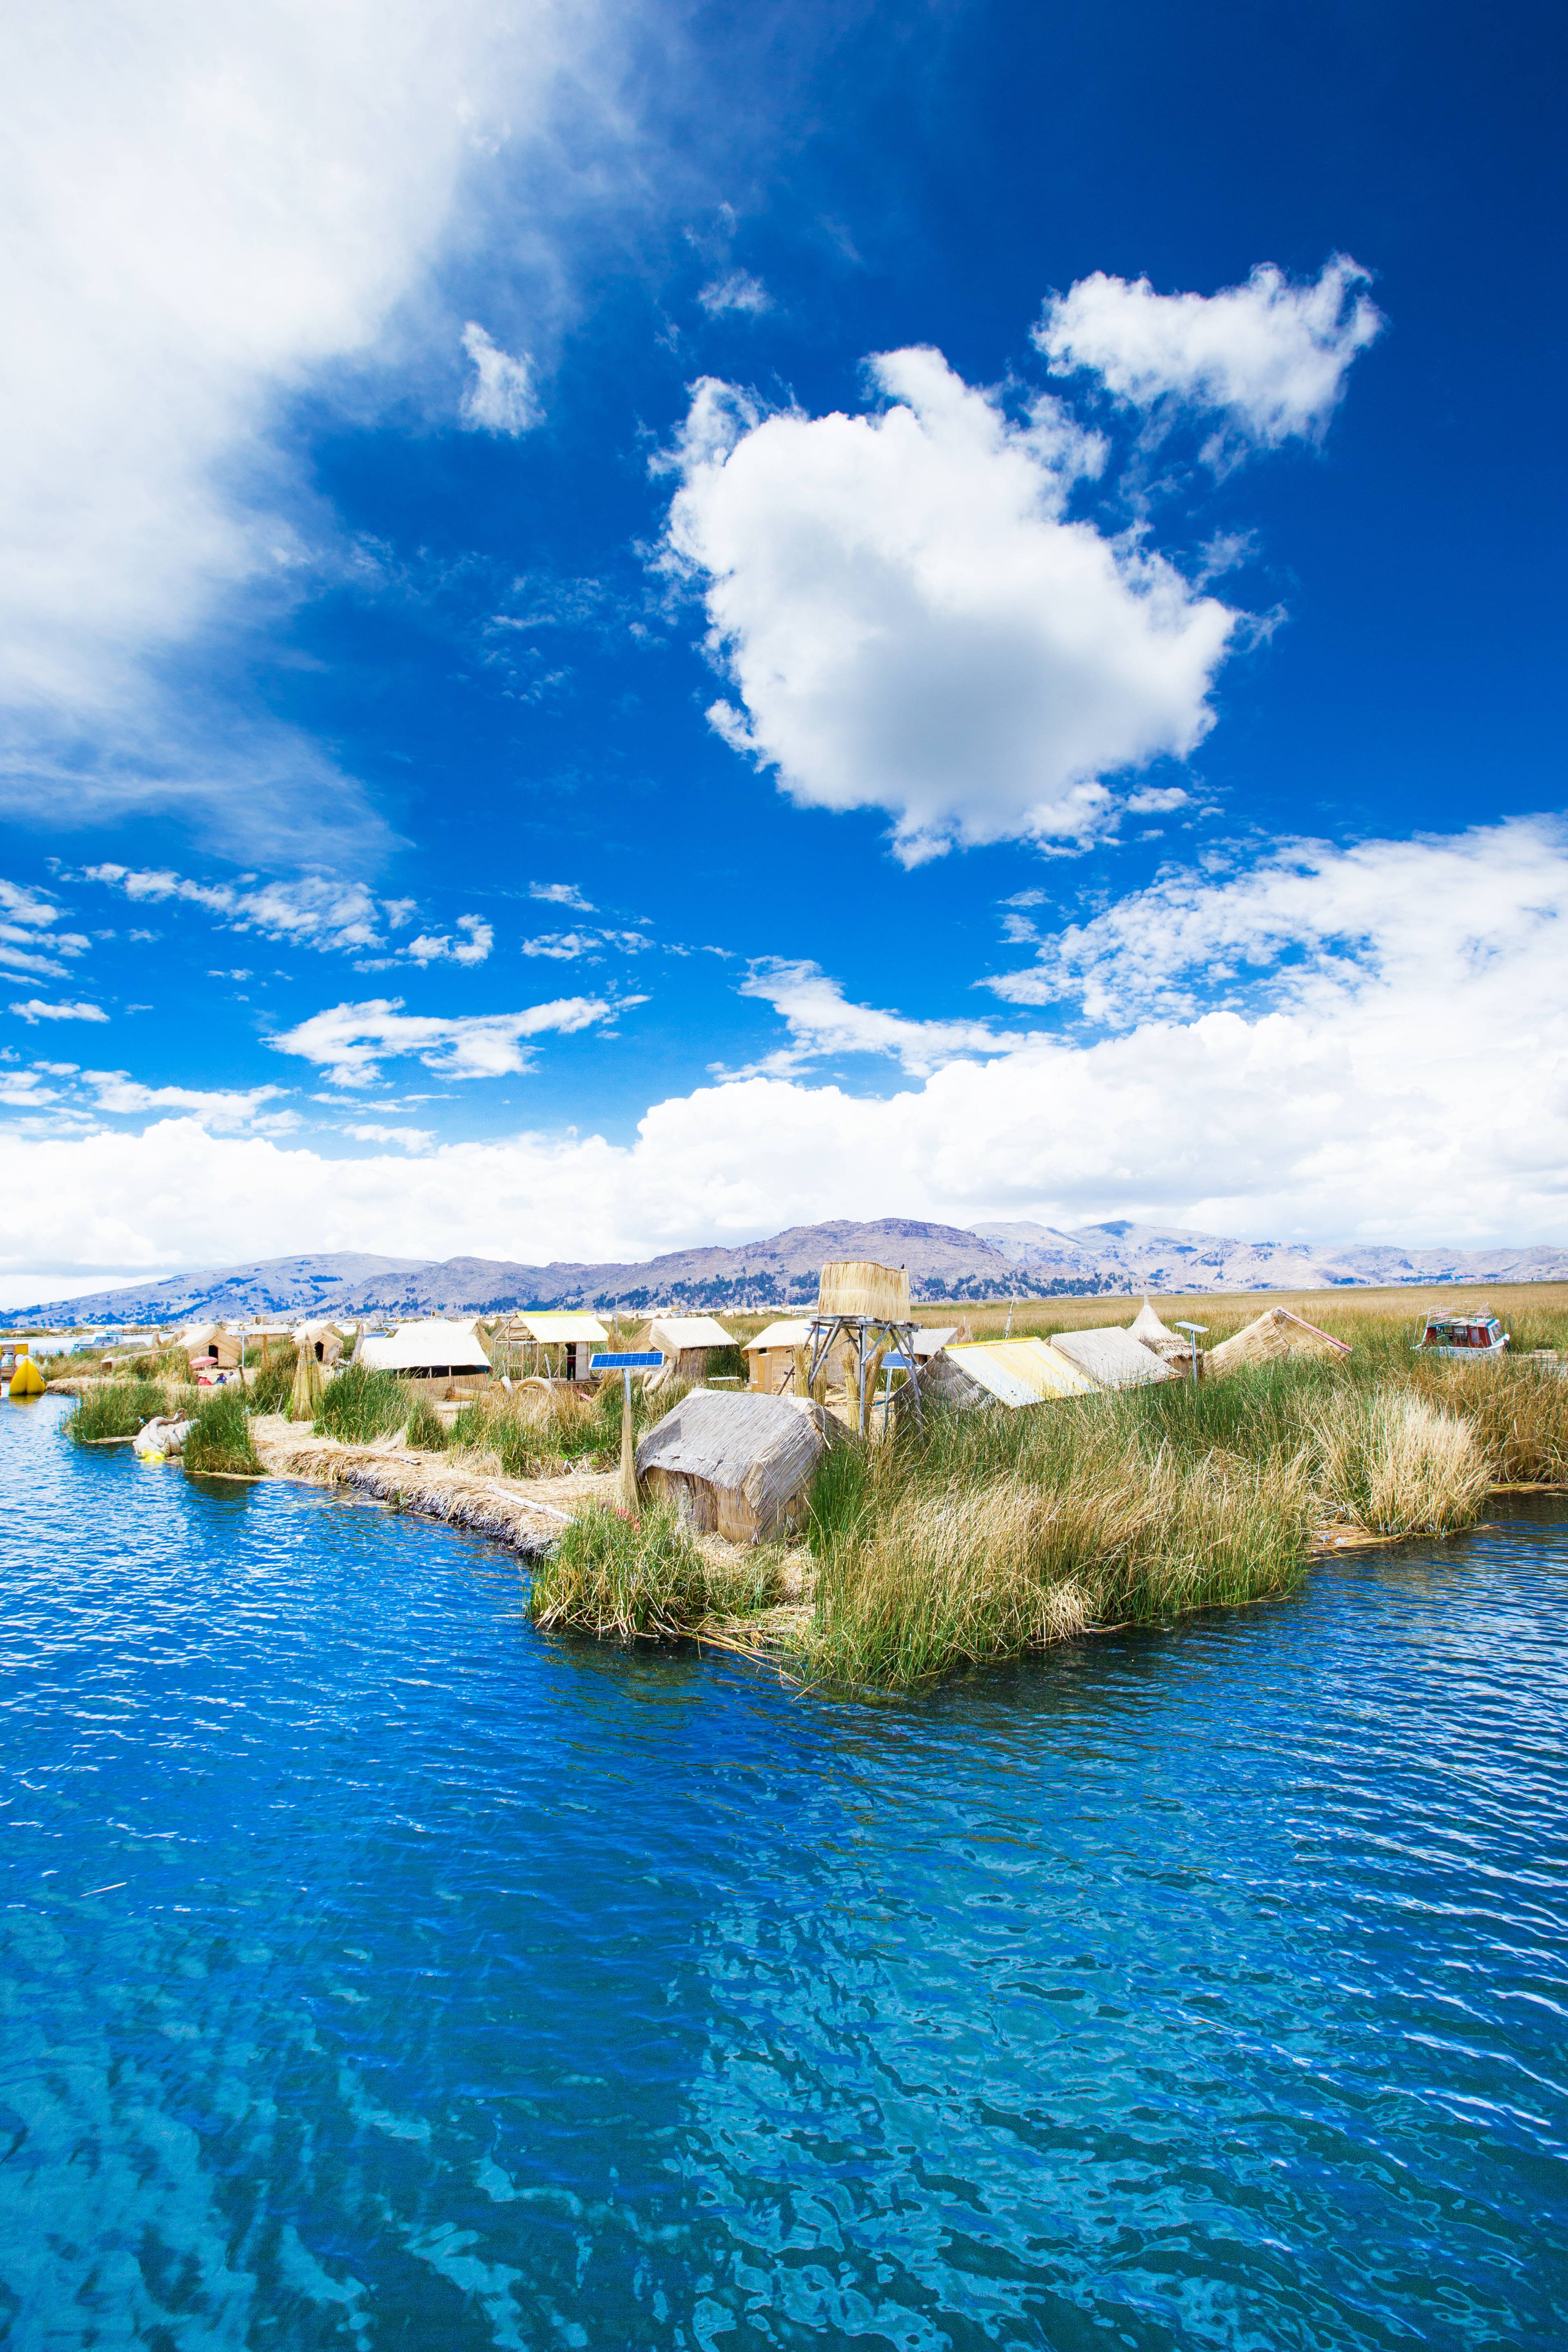 lago titicaca